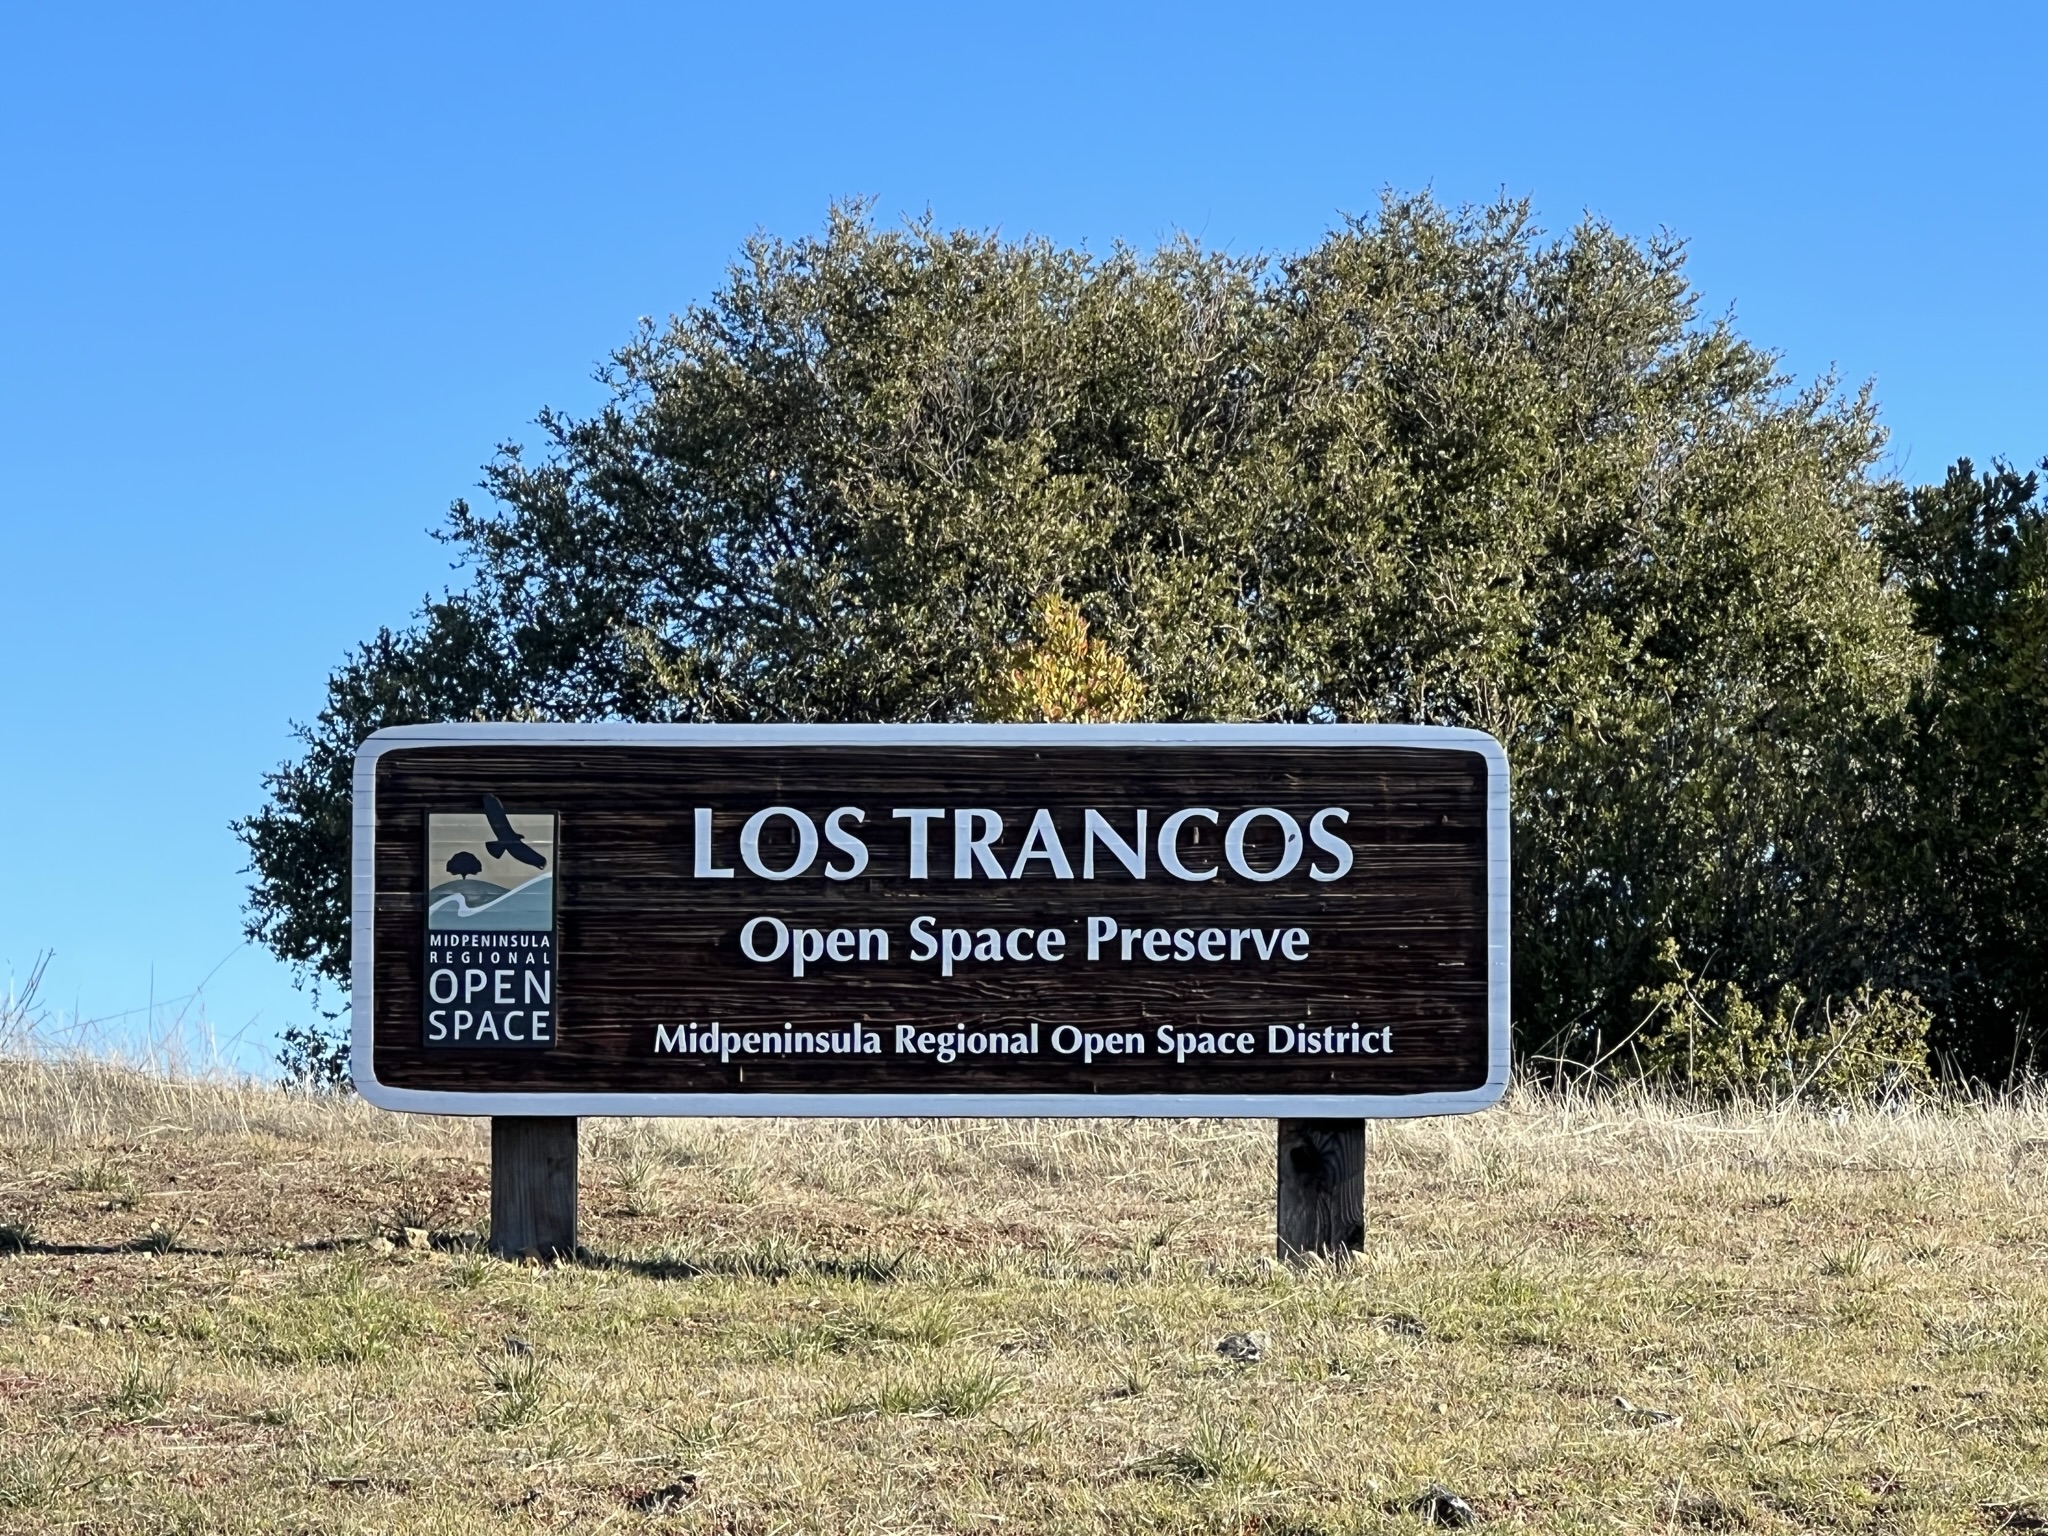 Los Trancos Open Space Preserve